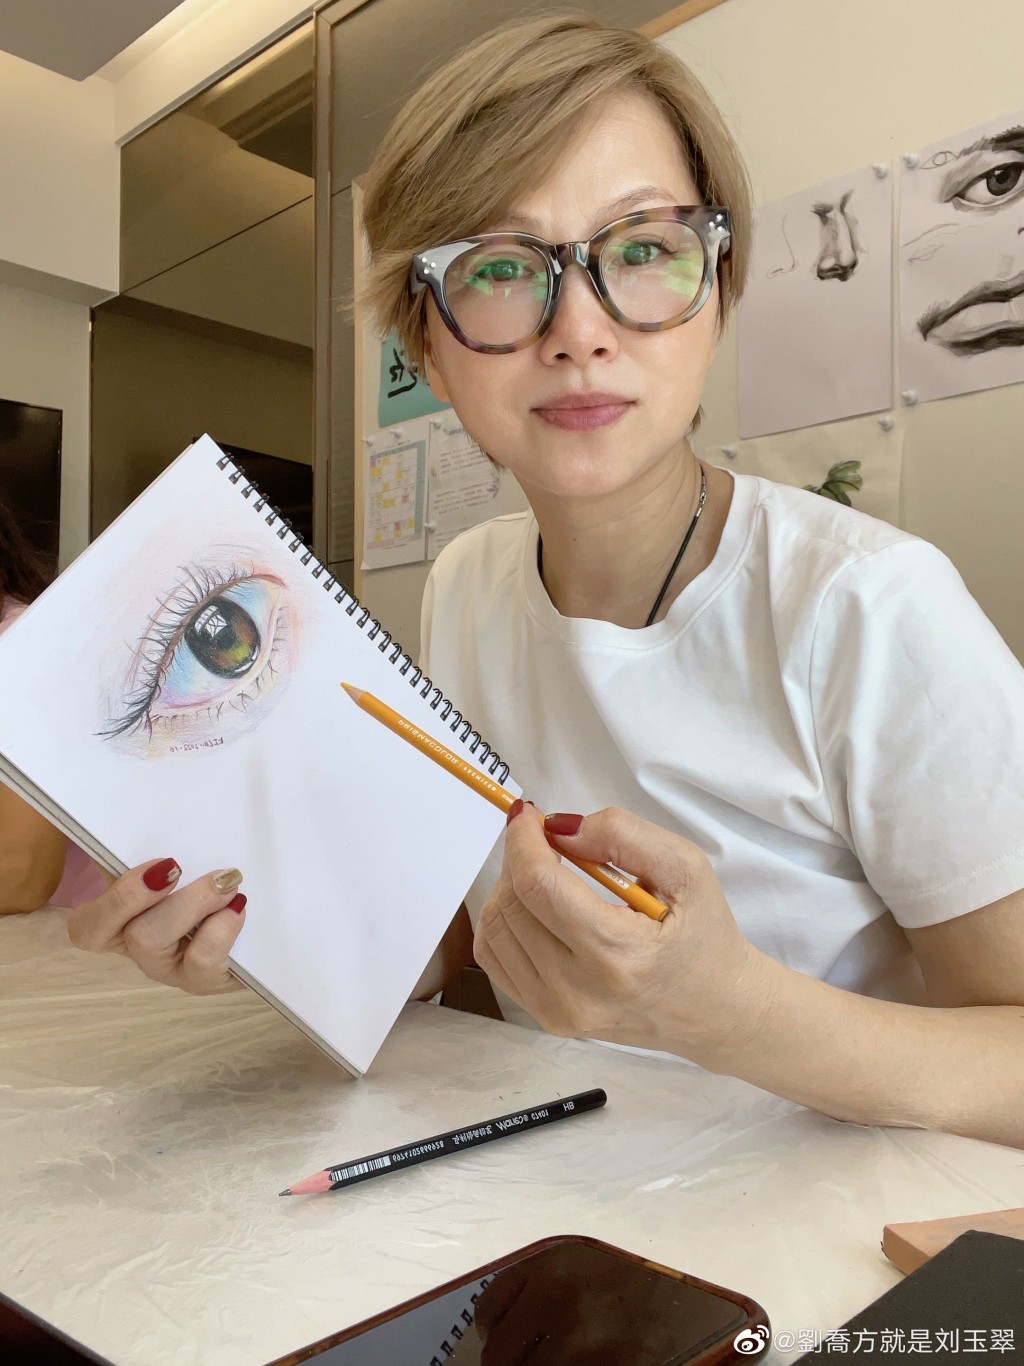 劉玉翠近年愛上繪畫，不時在社交網分享畫作，畫功亦相當不錯。